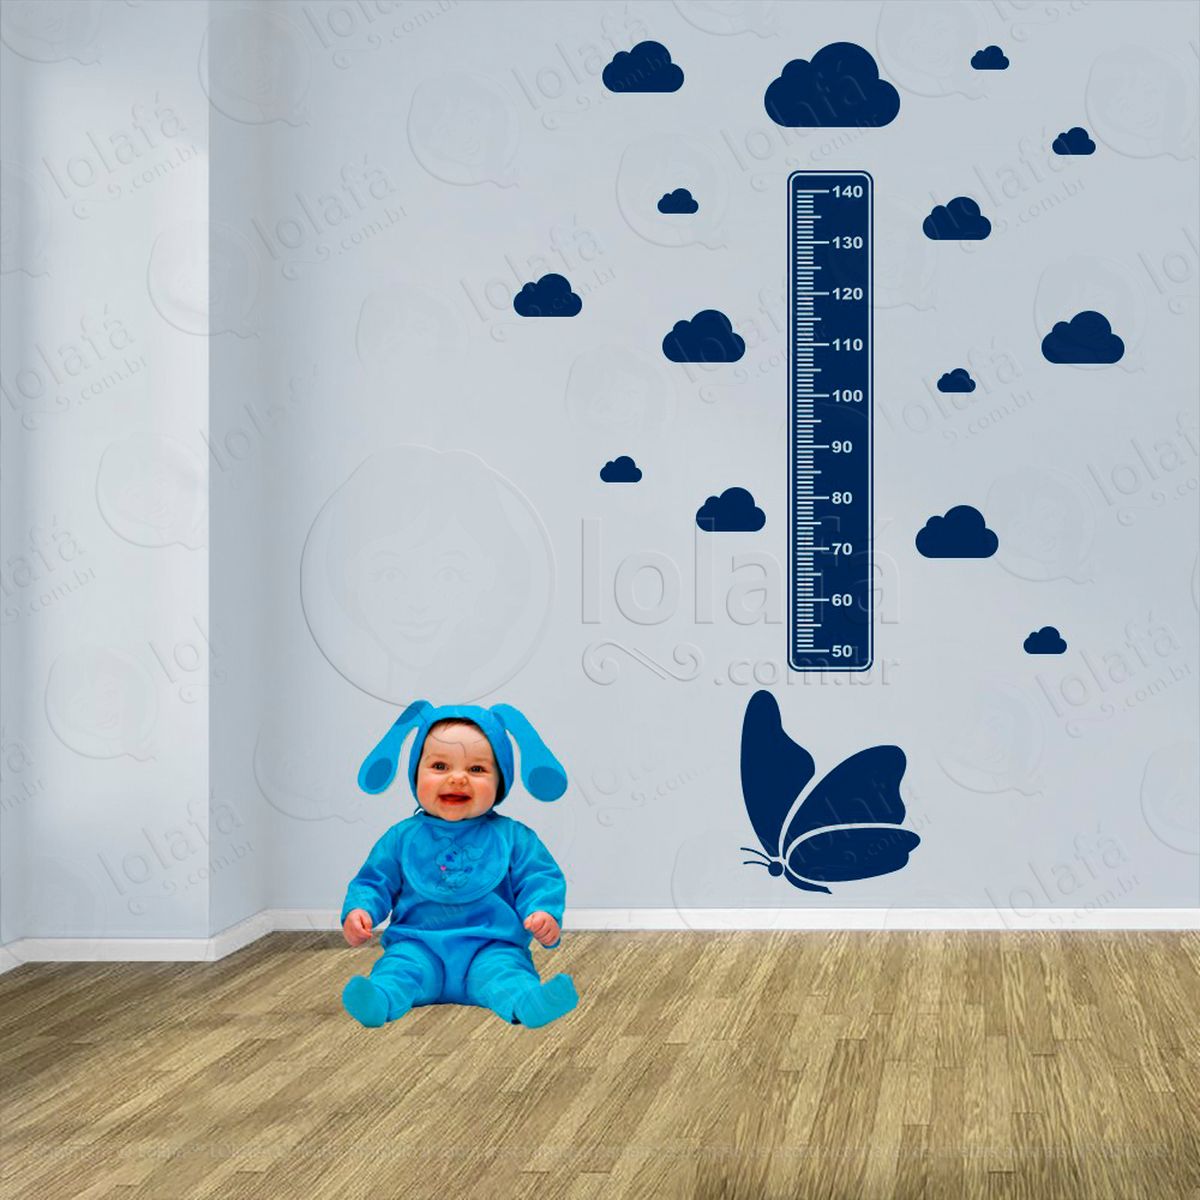 borboleta e nuvens adesivo régua de crescimento infantil, medidor de altura para quarto, porta e parede - mod:540